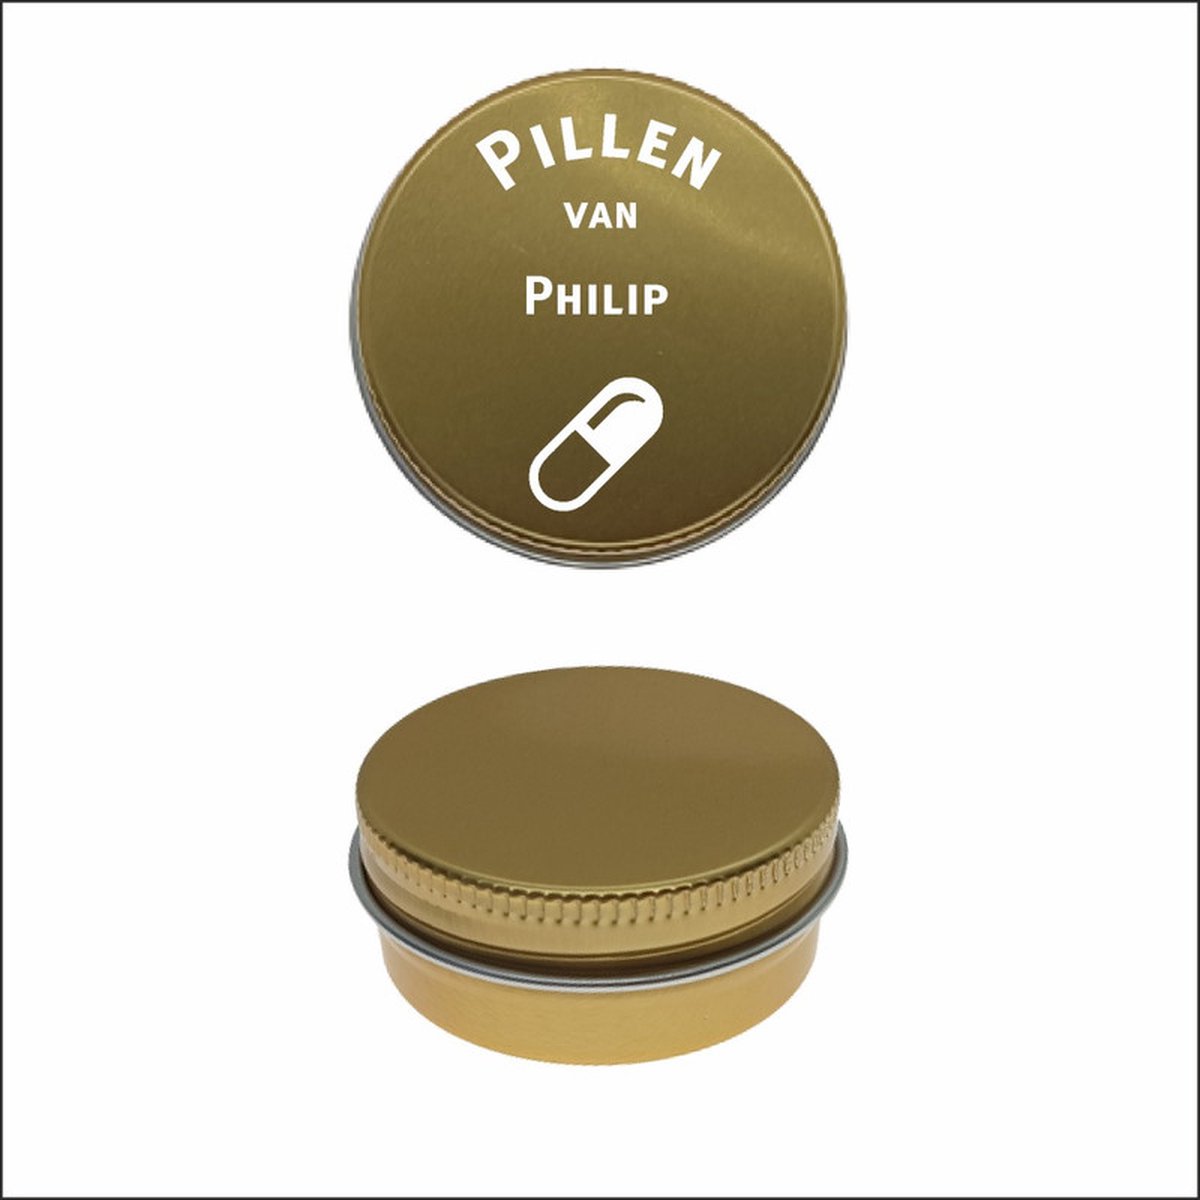 Pillen Blikje Met Naam Gravering - Philip